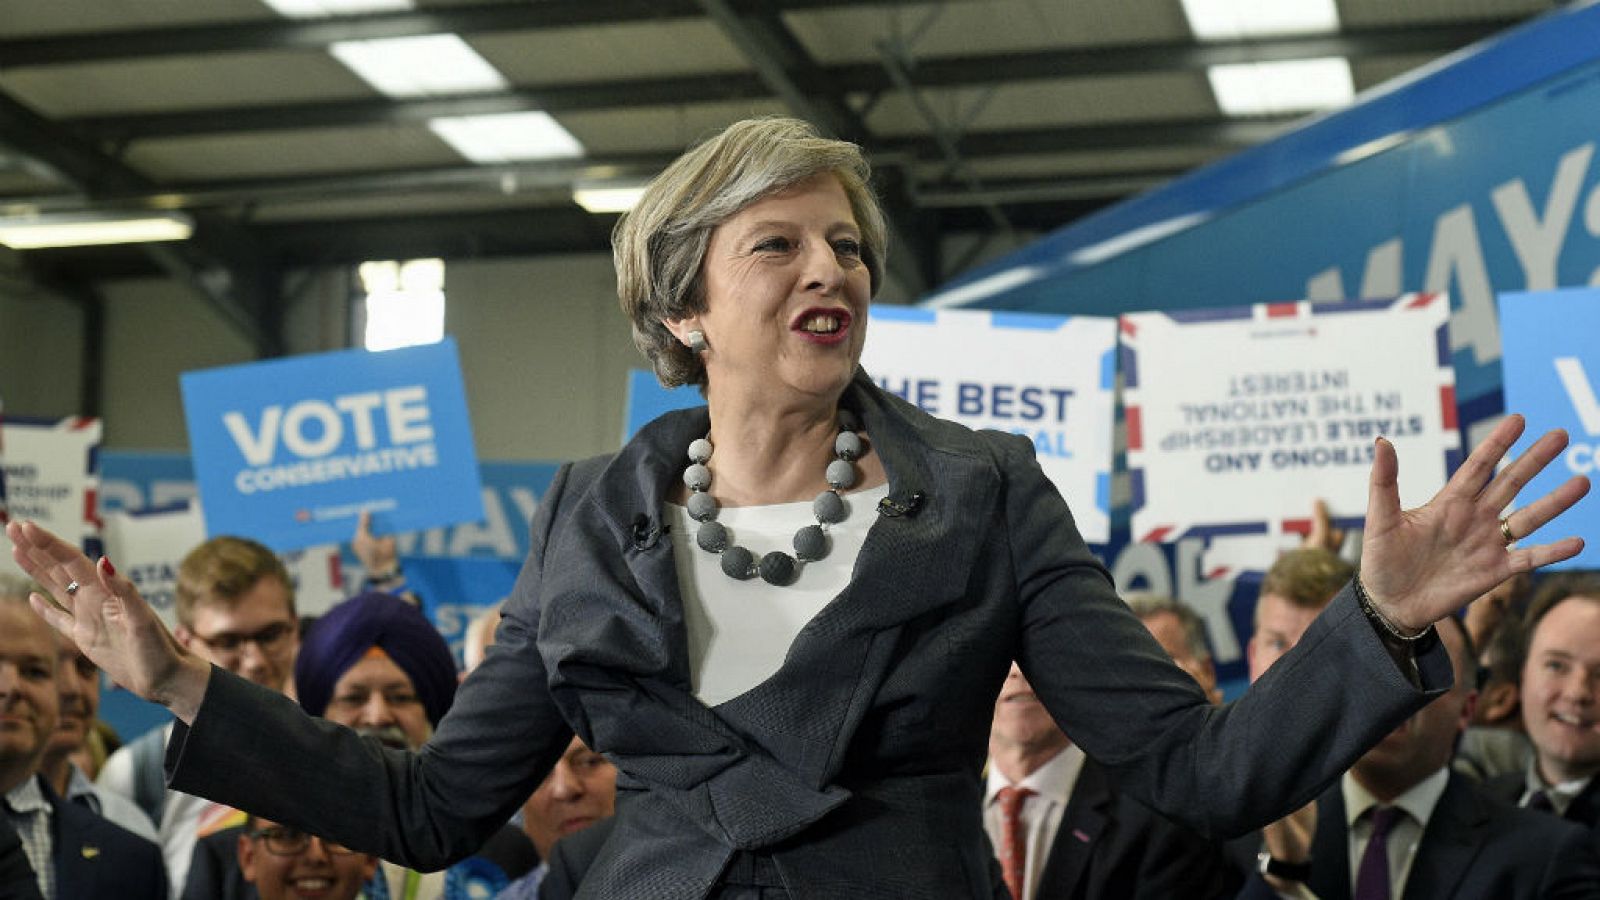  Las mañanas de RNE - Elecciones en el Reino Unido - ¿Quién es realmente Theresa May? - Escuchar ahora